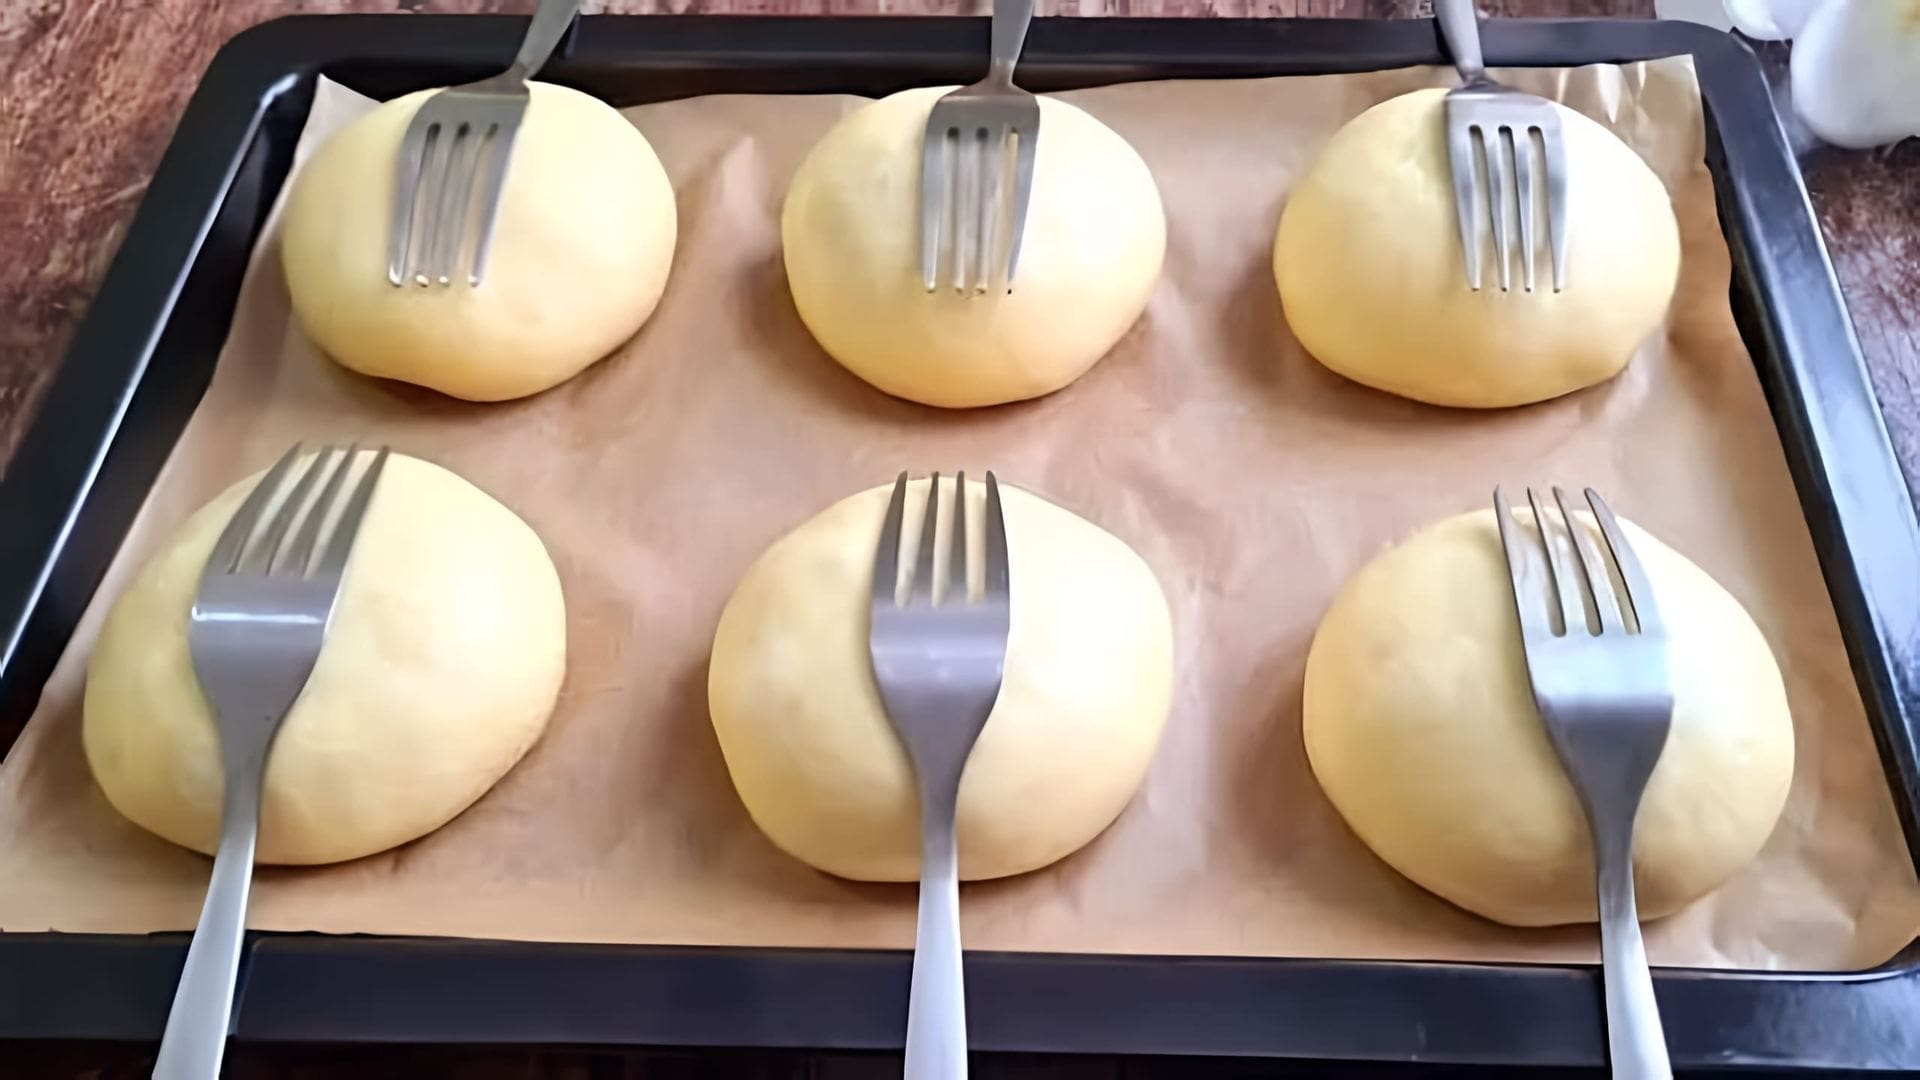 В этом видео демонстрируется процесс приготовления домашних булочек с использованием вилки